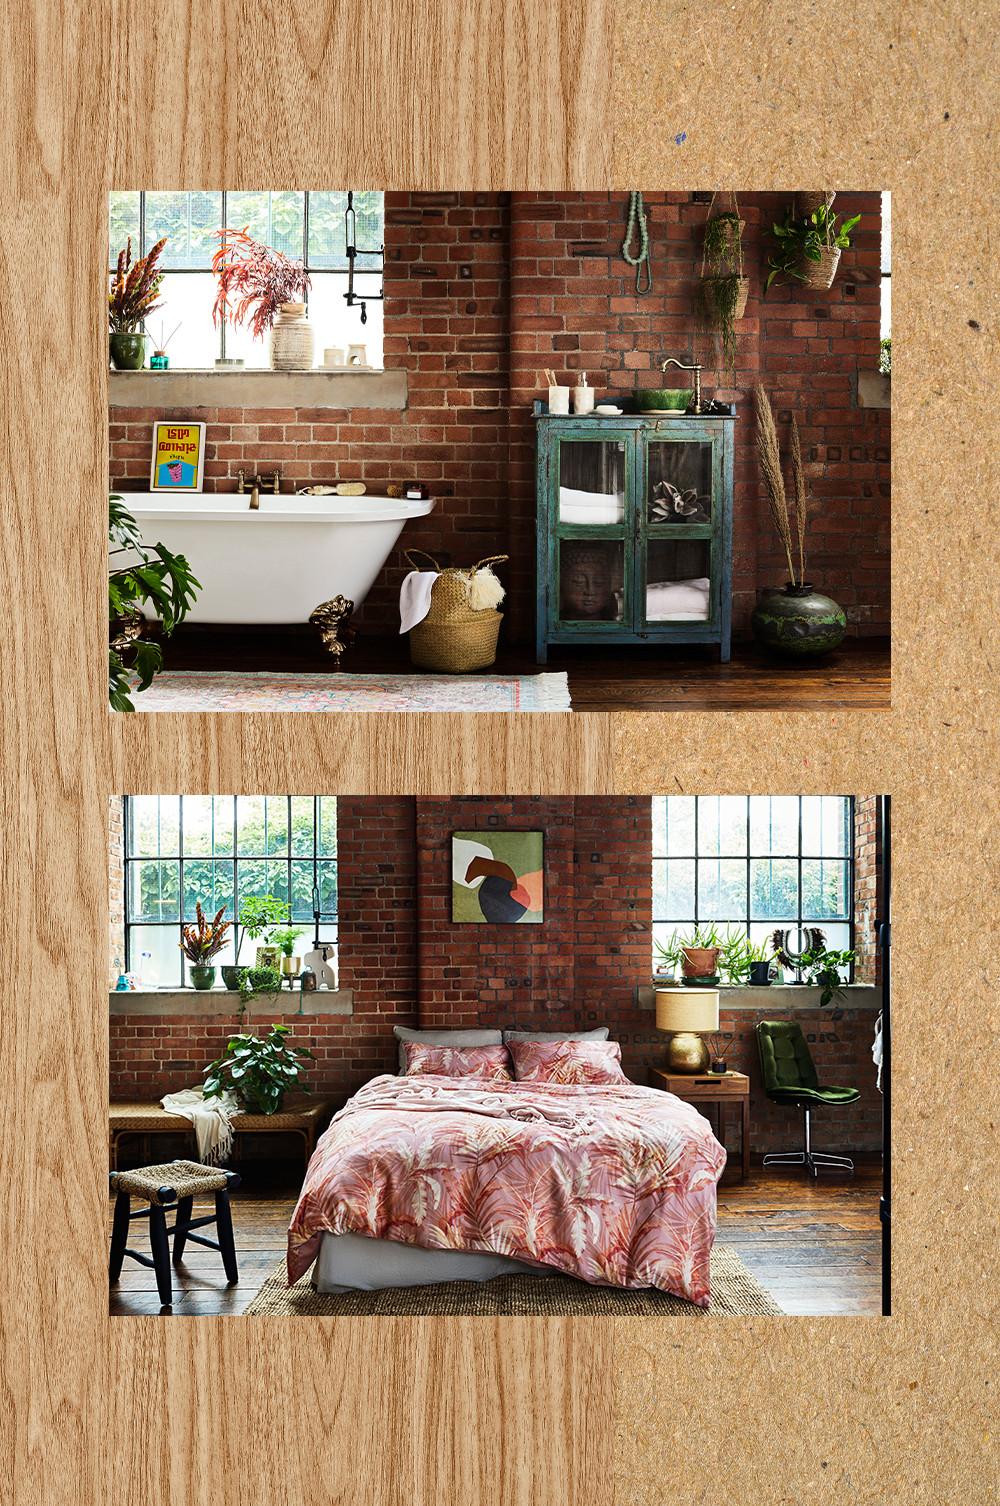 Imagen de interiores con dormitorio y baño